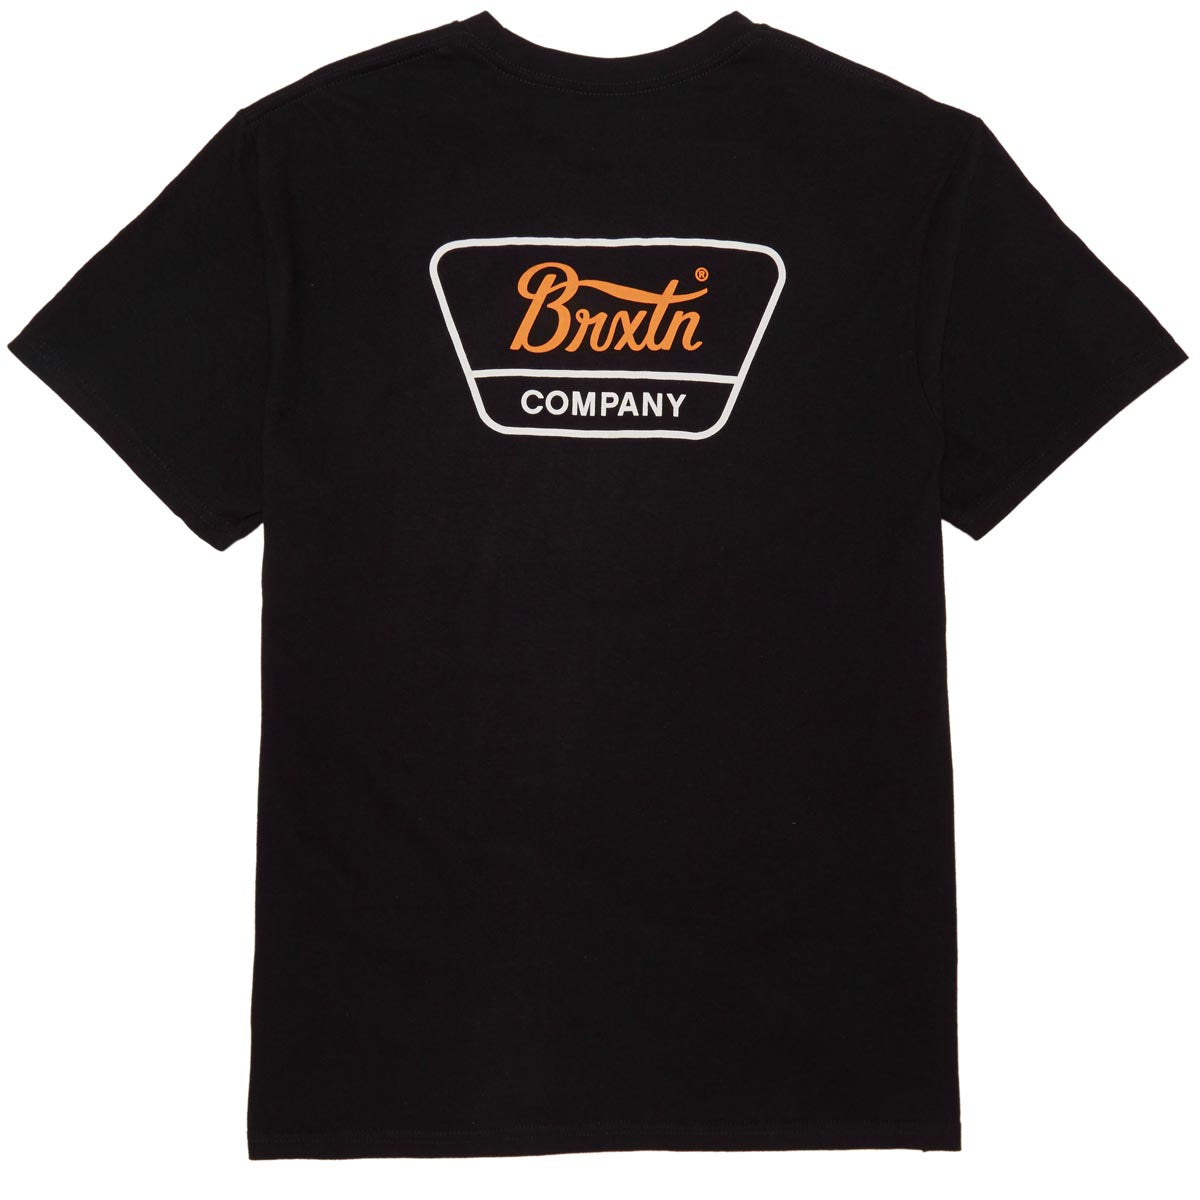 Brixton Linwood T-Shirt - Black/Orange/Washed Black image 1